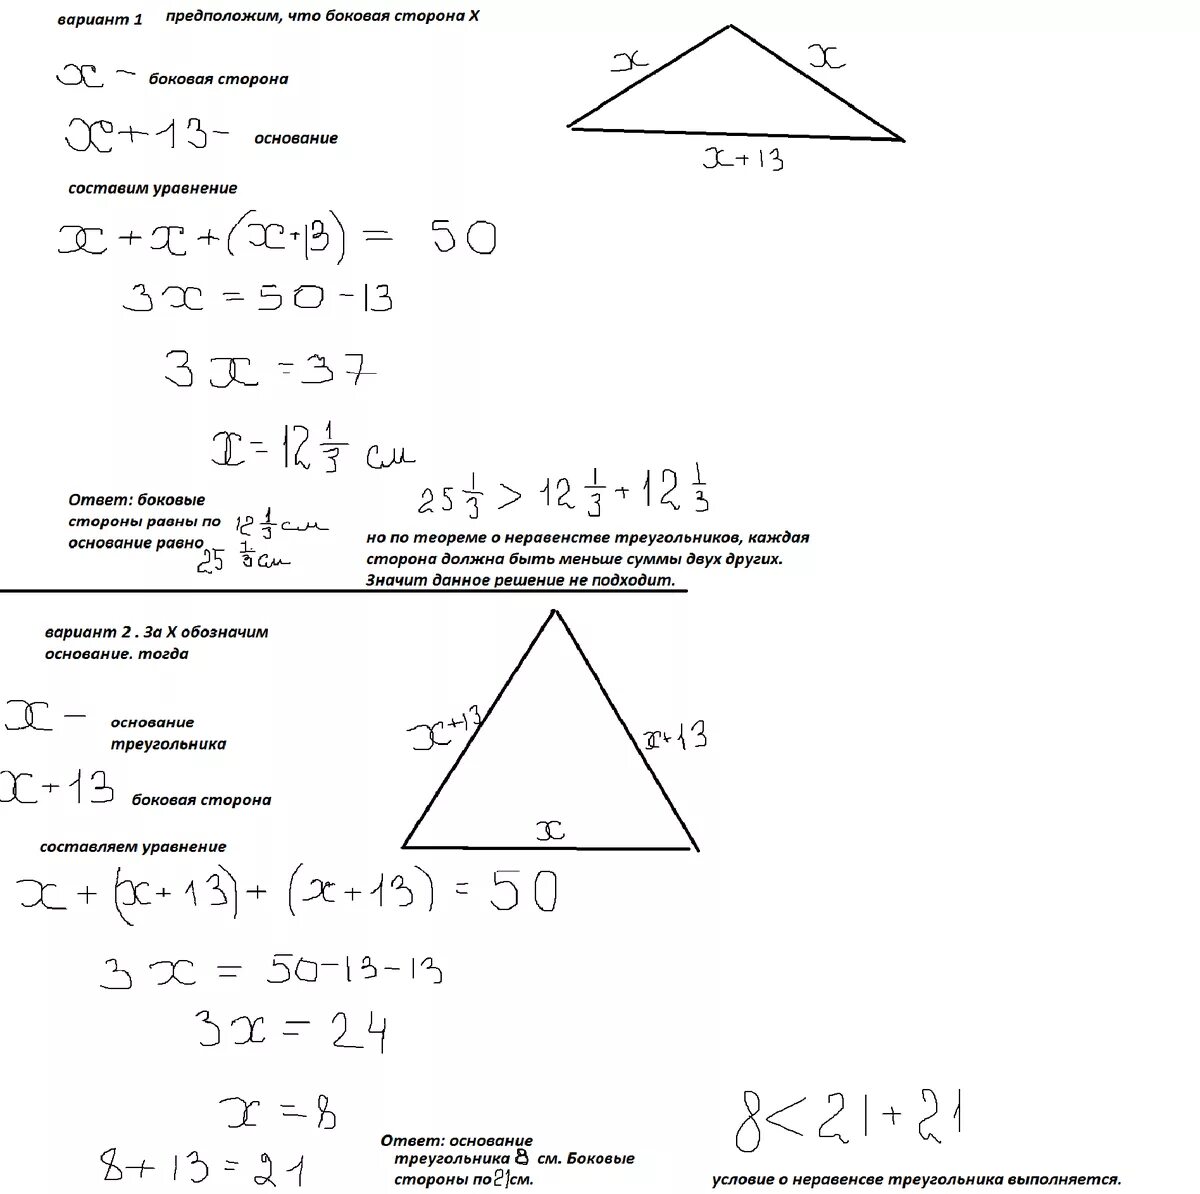 Периметр равнобедренного треугольника. Периметр равнобедренного треугольника равен. Периметр равнобедренного треугольника равен 50. Периметр равнобедренного тупоугольного треугольника. Периметр равнобедренного тупоугольного треугольника равен 60